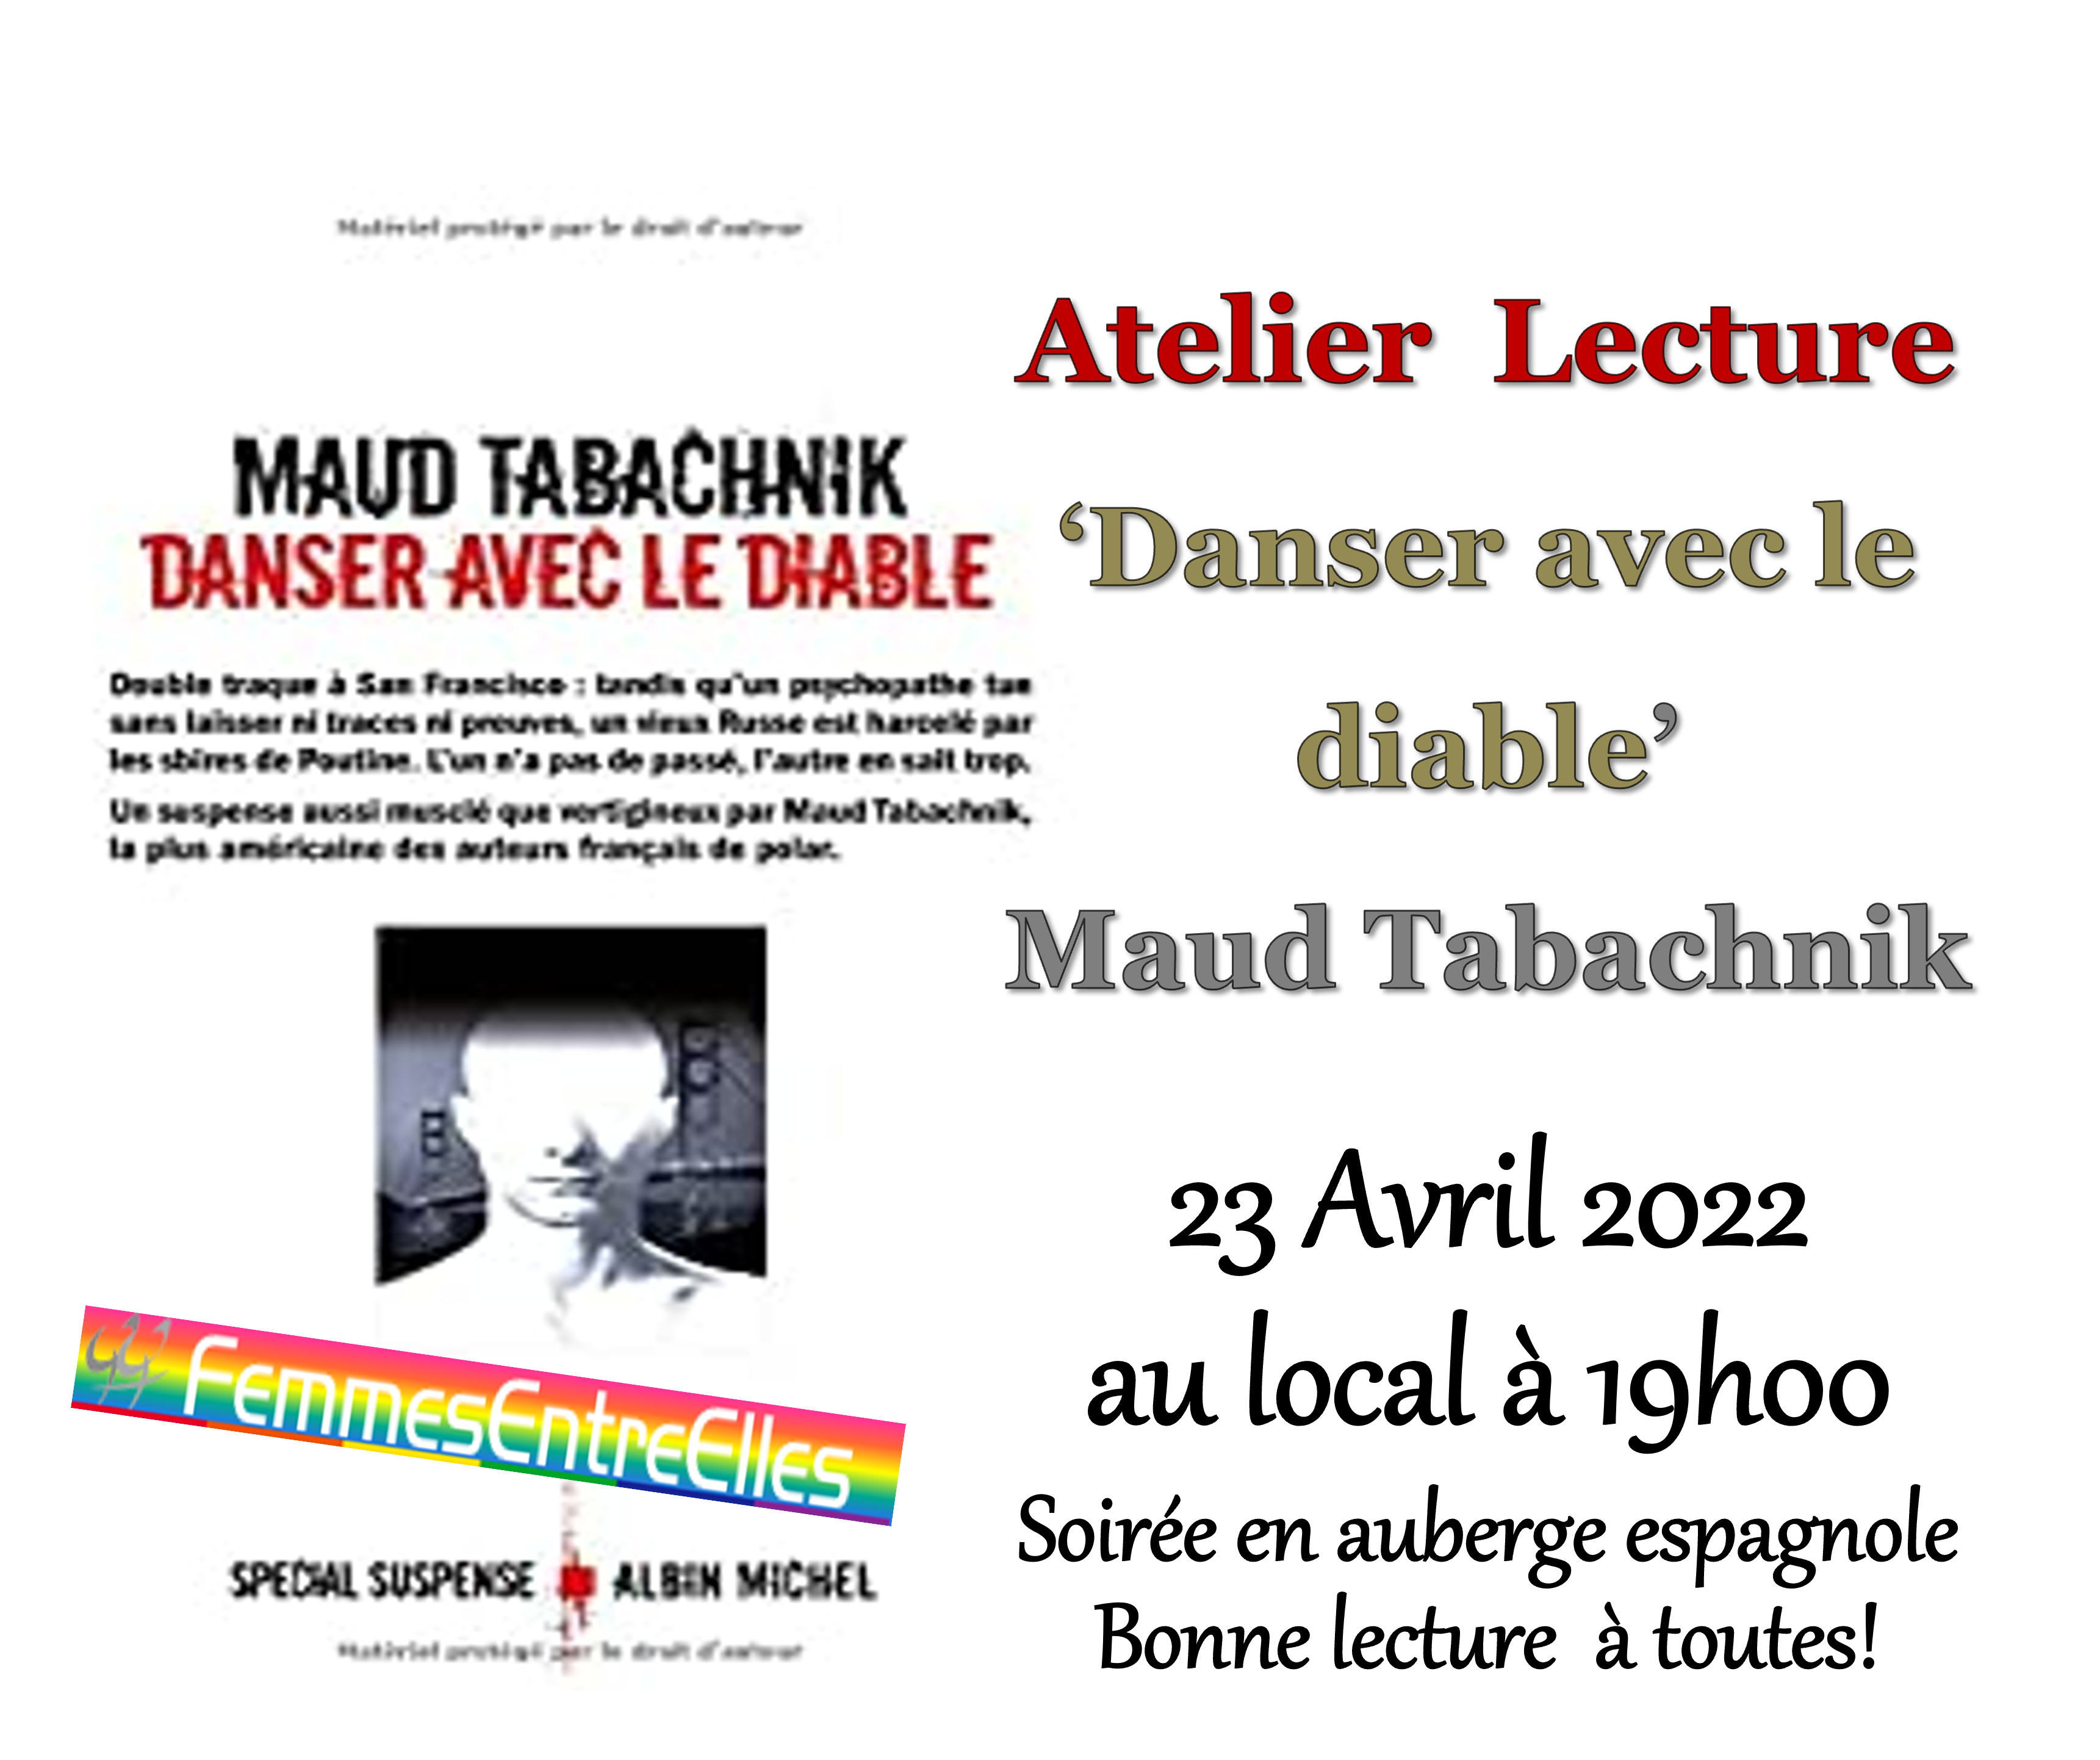 [FEE] Atelier lecture 23 Avril 2022, 19h au local avec "Danser avec le Diable", de Maud Tabachnik